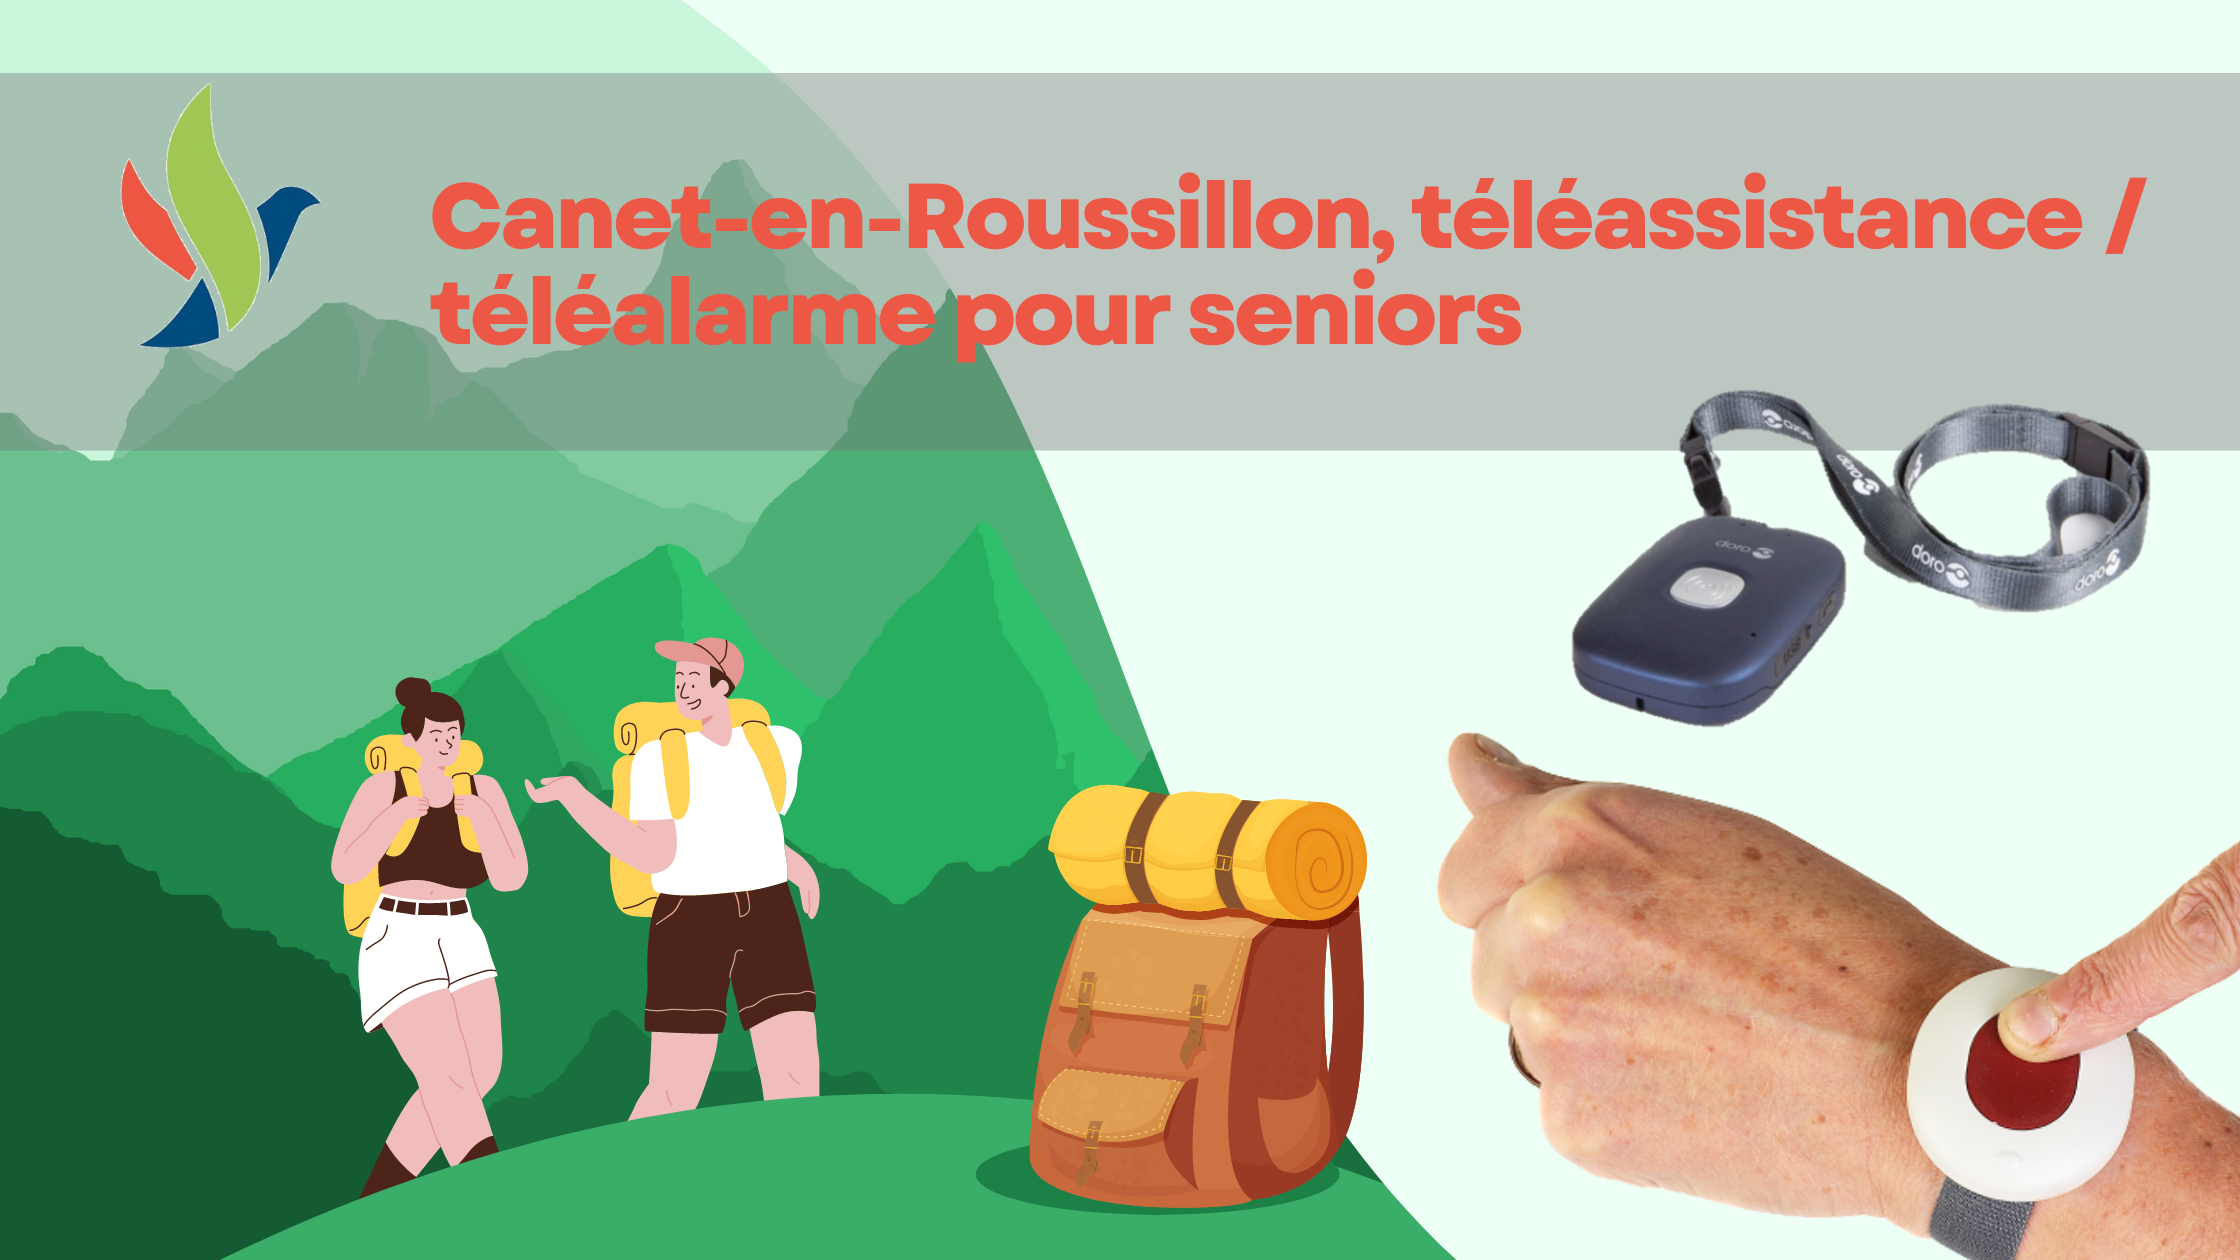 Canet-en-Roussillon, téléassistance téléalarme pour seniors